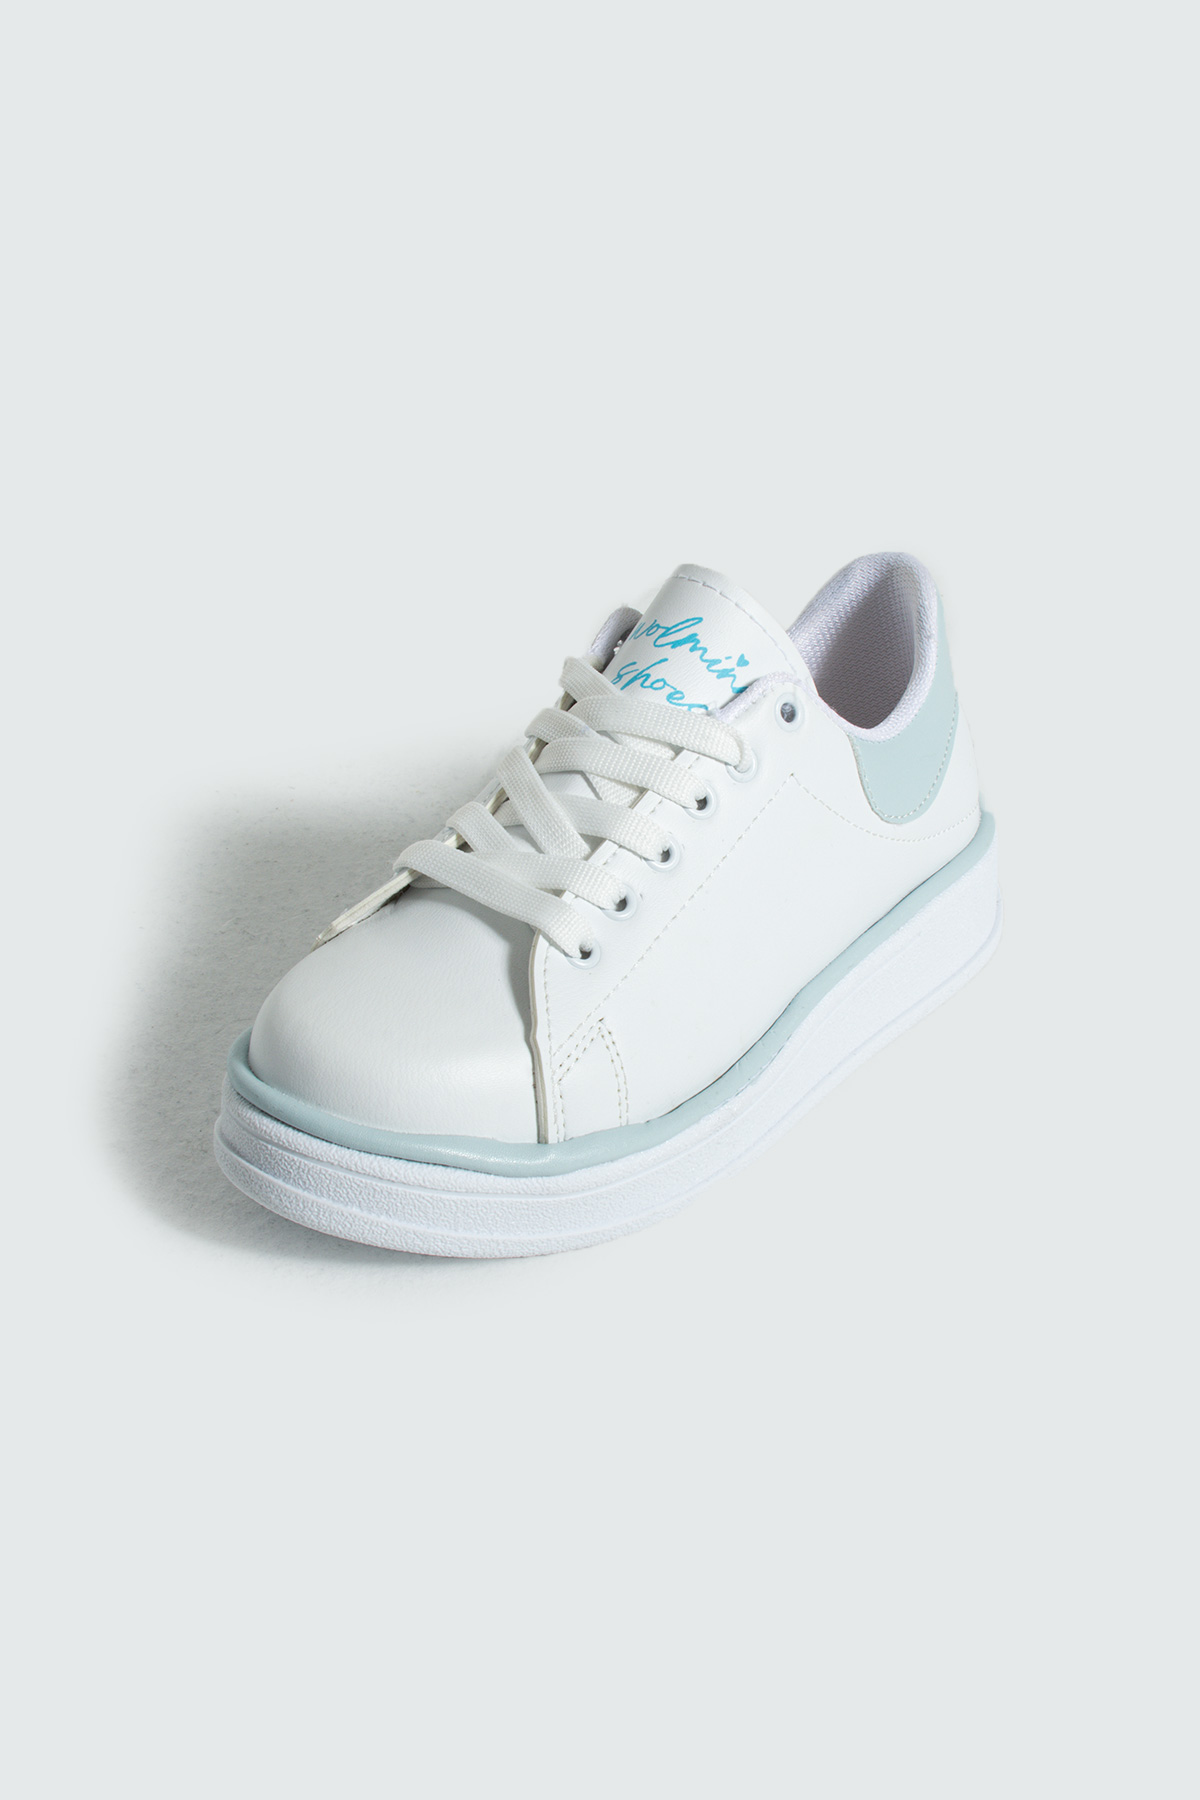 Pembe Potin Rahat Taban Renk Şeritli Bağcıklı Kadın Sneaker 001-340-24BMavi - Beyaz